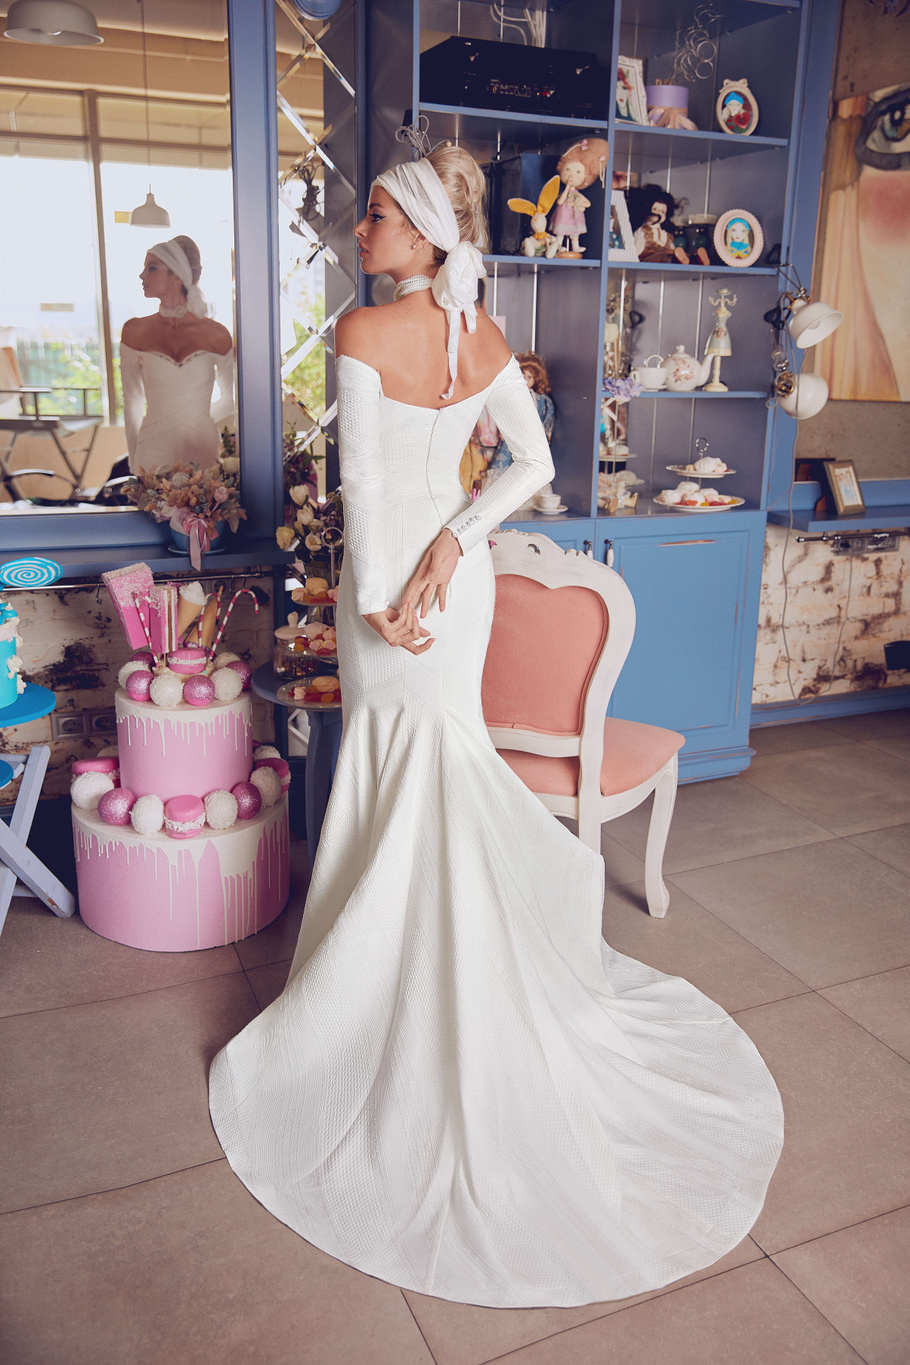 Купить свадебное платье «Азири» Бламмо Биамо из коллекции Свит Лайф 2021 года в Санкт-Петербурге